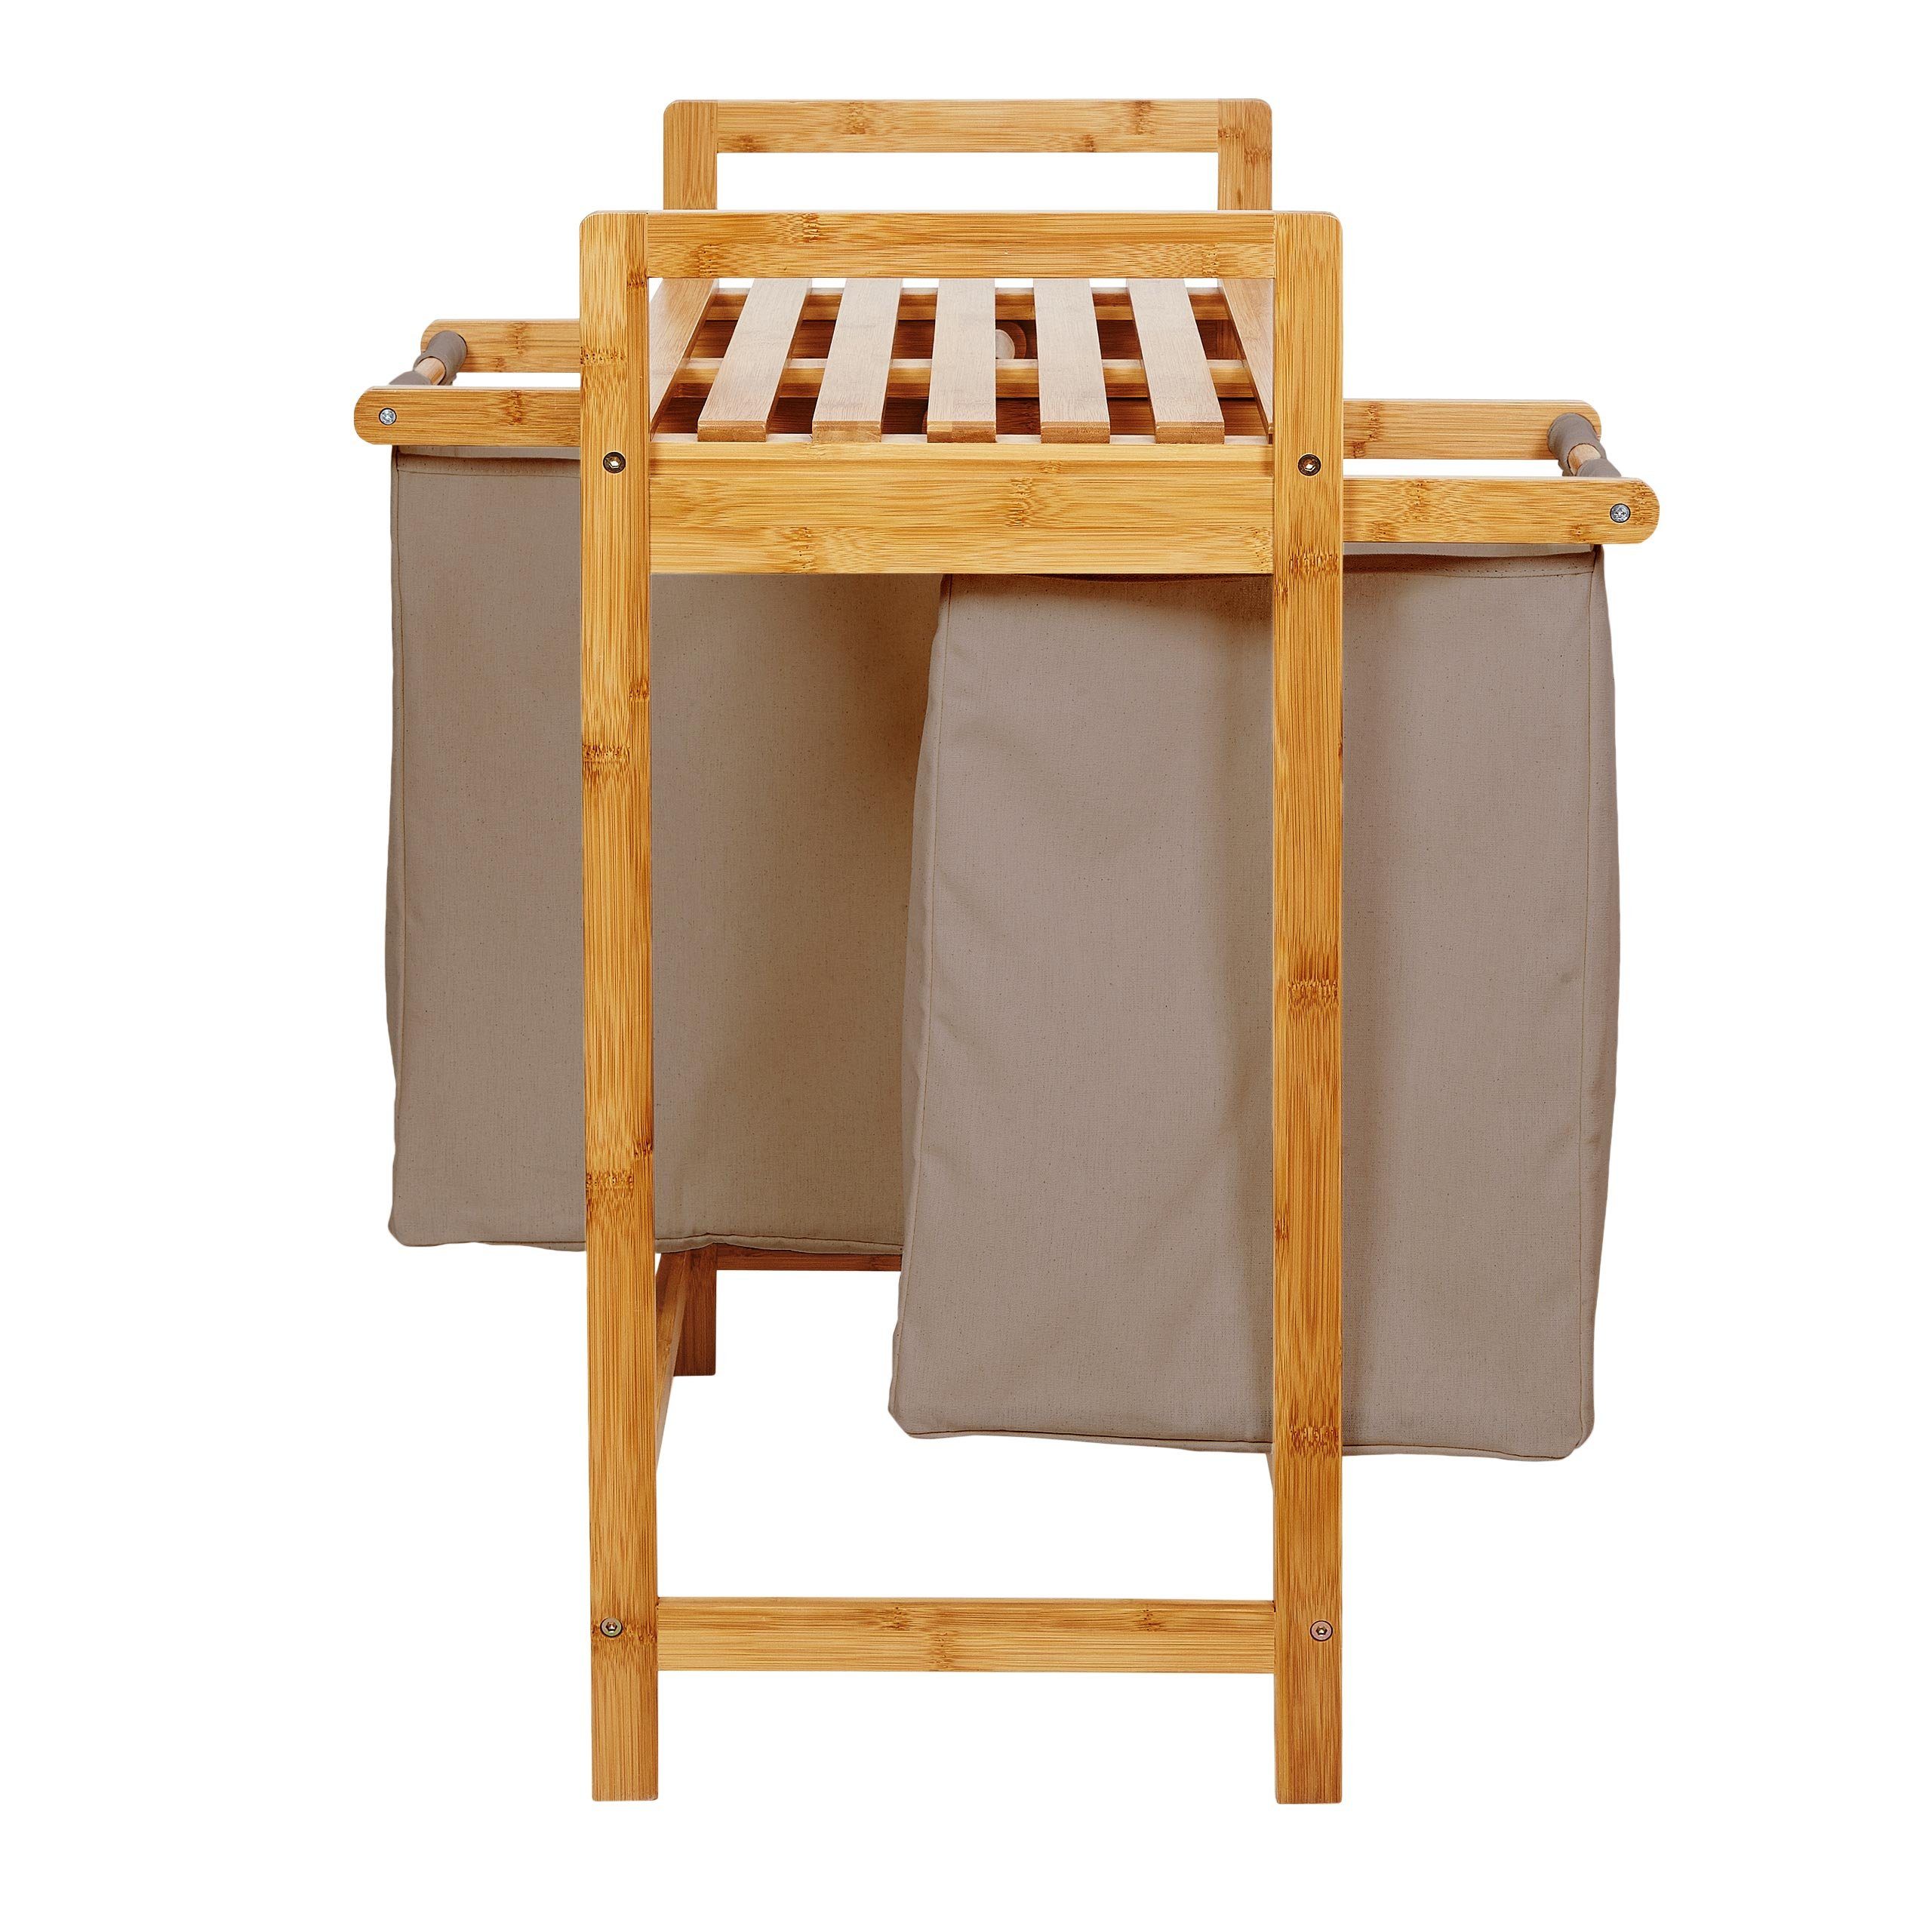 Lumaland Wäschekorb »Wäschekorb aus Bambus« (Bambuswäschekorb mit 2  Wäschesäcken), mit 2 ausziehbaren Wäschesäcken, ca. 73 x 64 x 33 cm Grau  online kaufen | OTTO